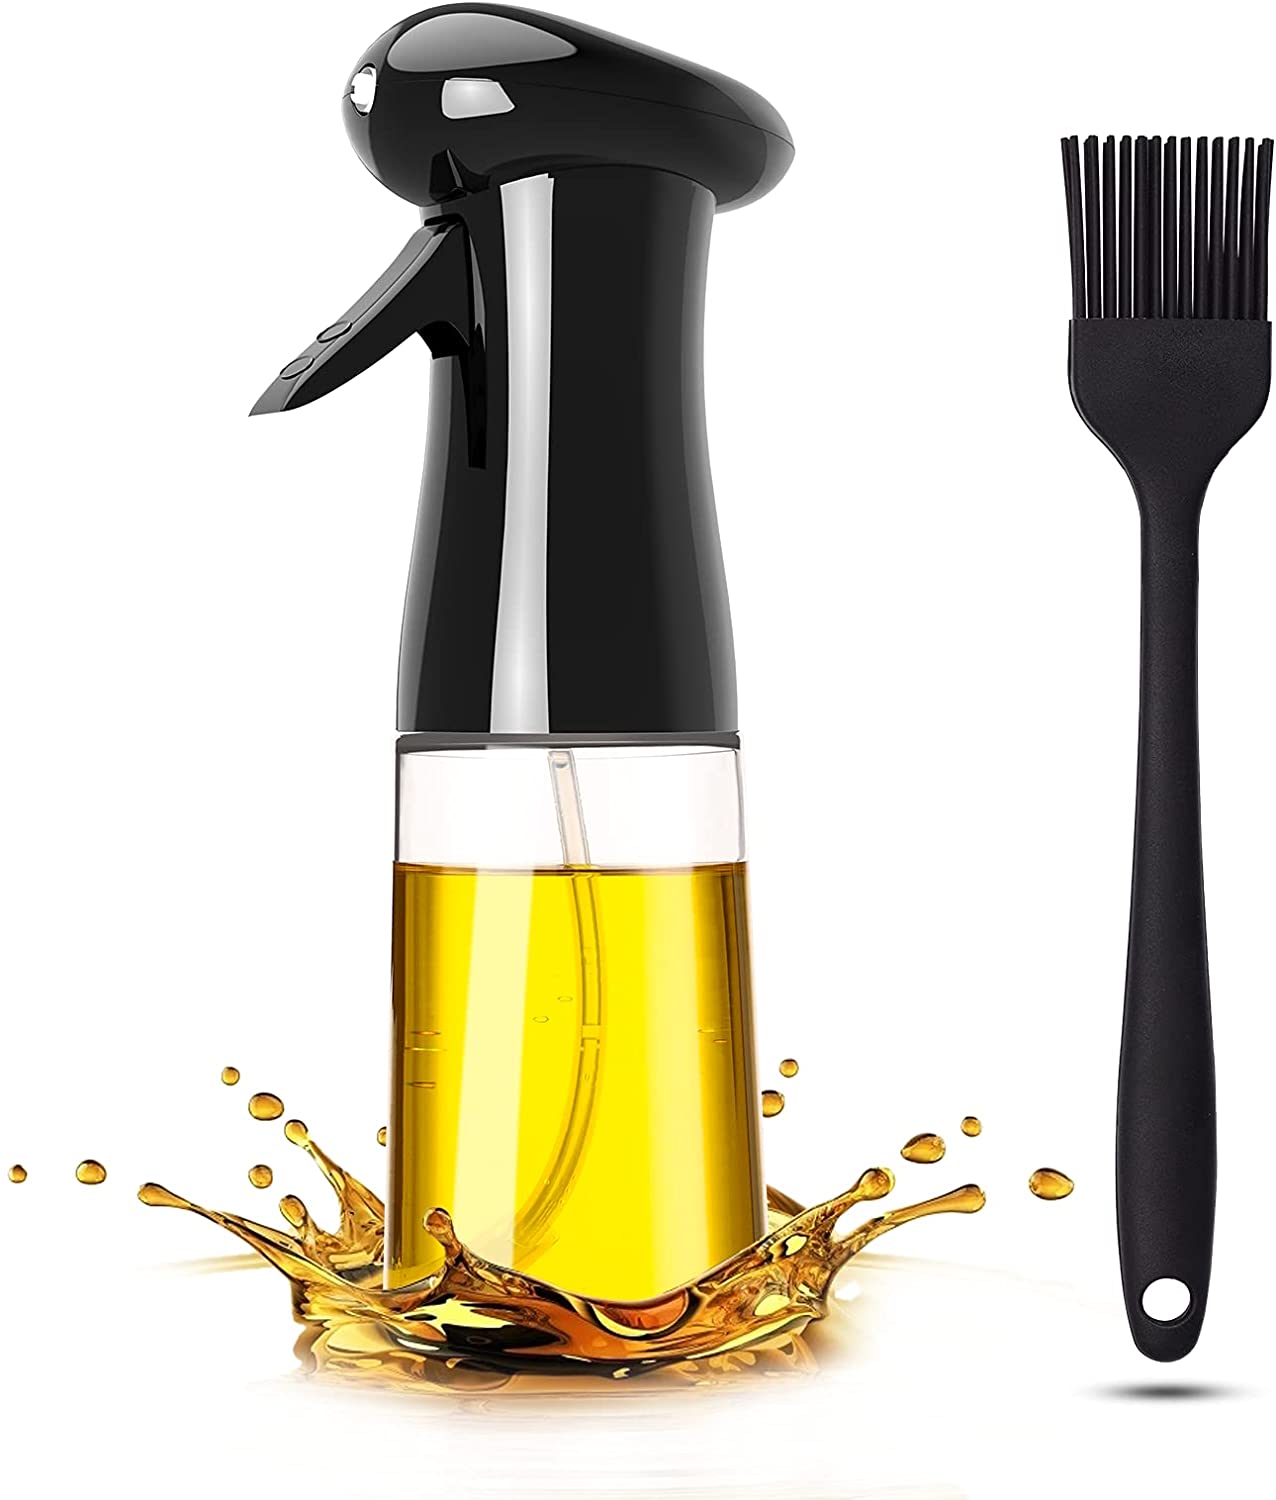 Injecteur de cuisine Pukitt 200ML Injecteur d'huile avec brosse Huile d'olive pour la cuisson, les grillades, la salade, la cuisson, la cuisson, la cuisson au four, les grillades